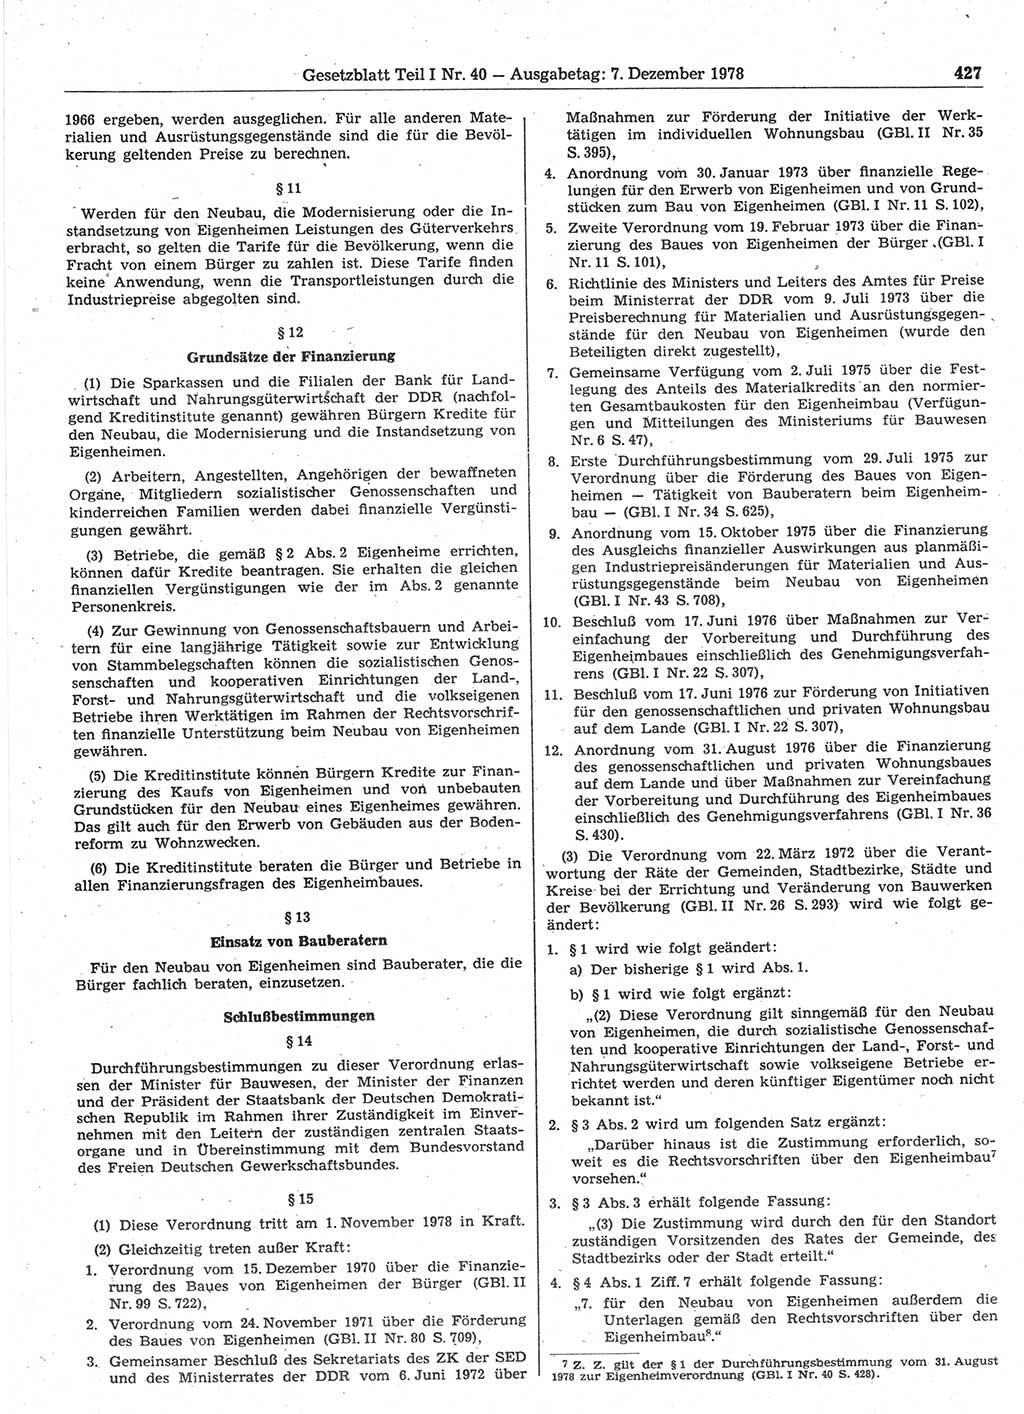 Gesetzblatt (GBl.) der Deutschen Demokratischen Republik (DDR) Teil Ⅰ 1978, Seite 427 (GBl. DDR Ⅰ 1978, S. 427)